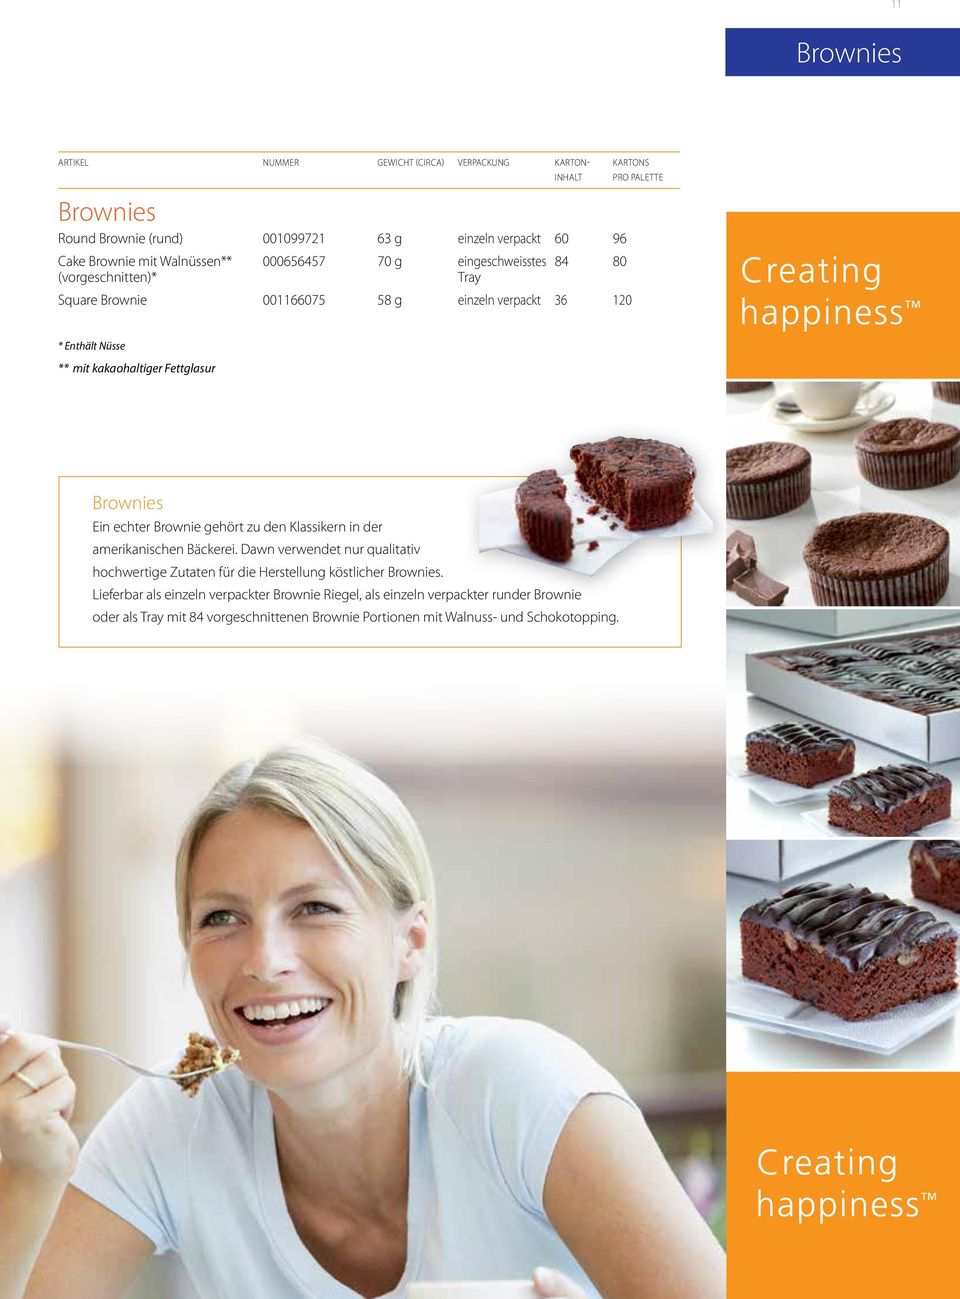 Brownies Ein echter Brownie gehört zu den Klassikern in der amerikanischen Bäckerei.